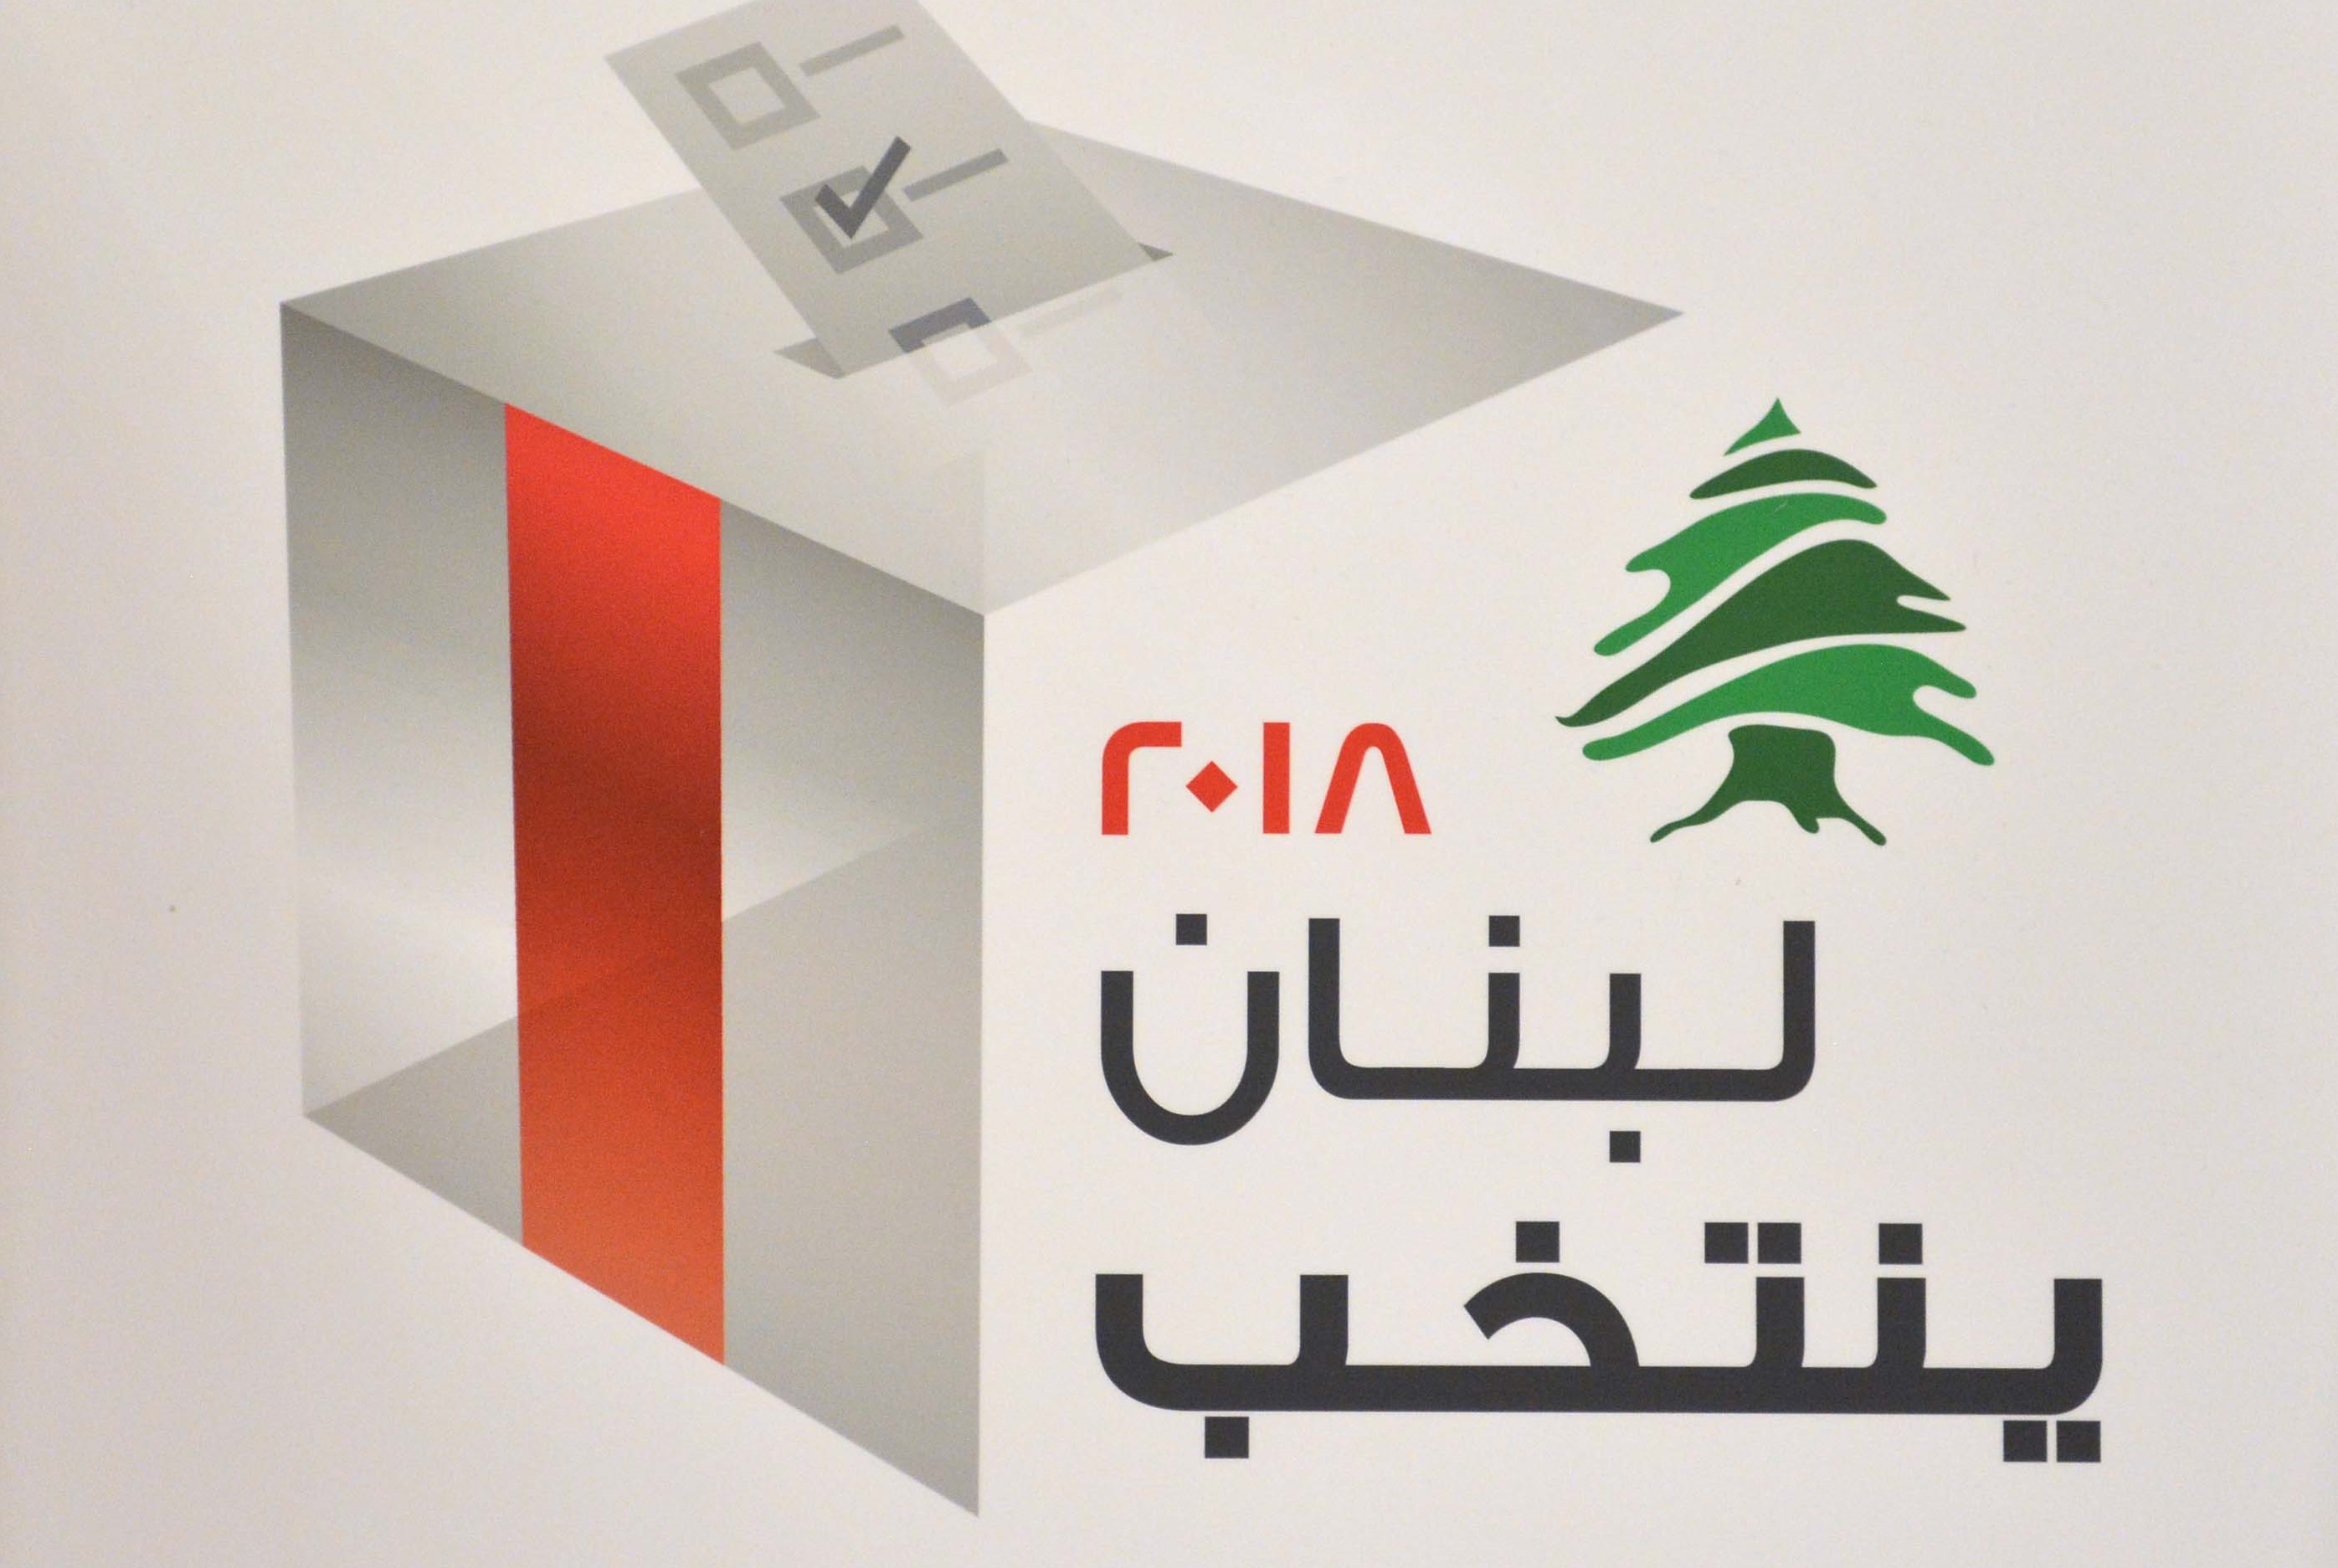 شعار الانتخابات اللبنانية للعام 2018